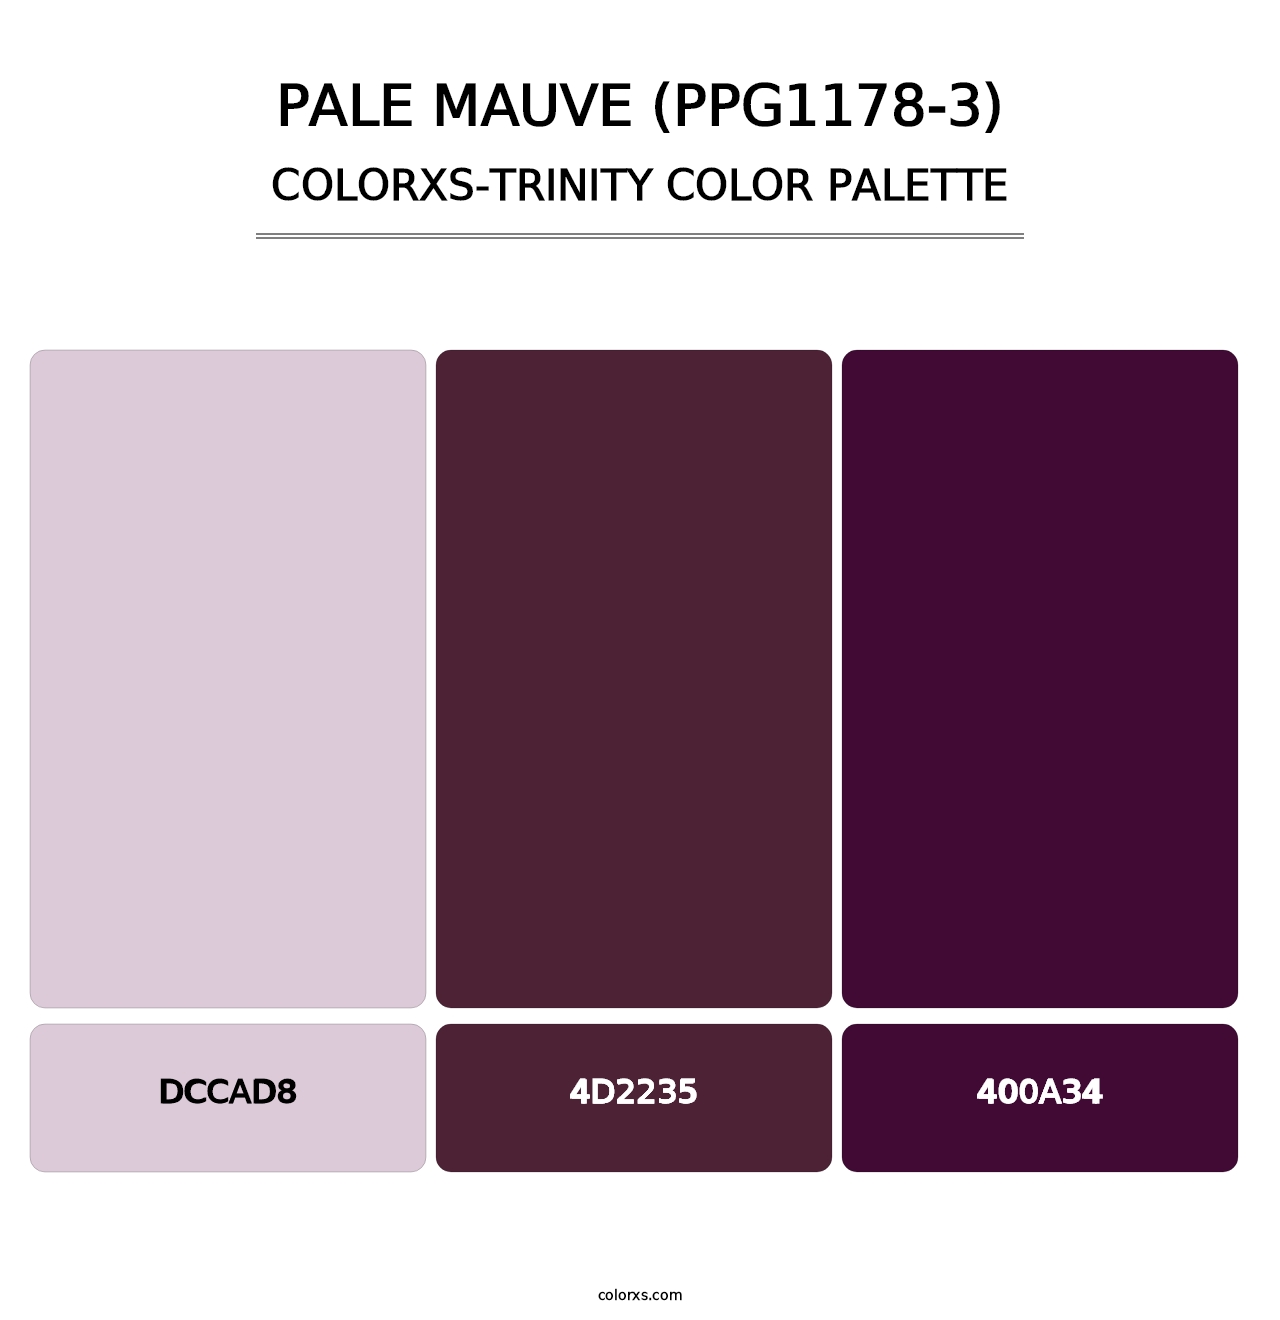 Pale Mauve (PPG1178-3) - Colorxs Trinity Palette